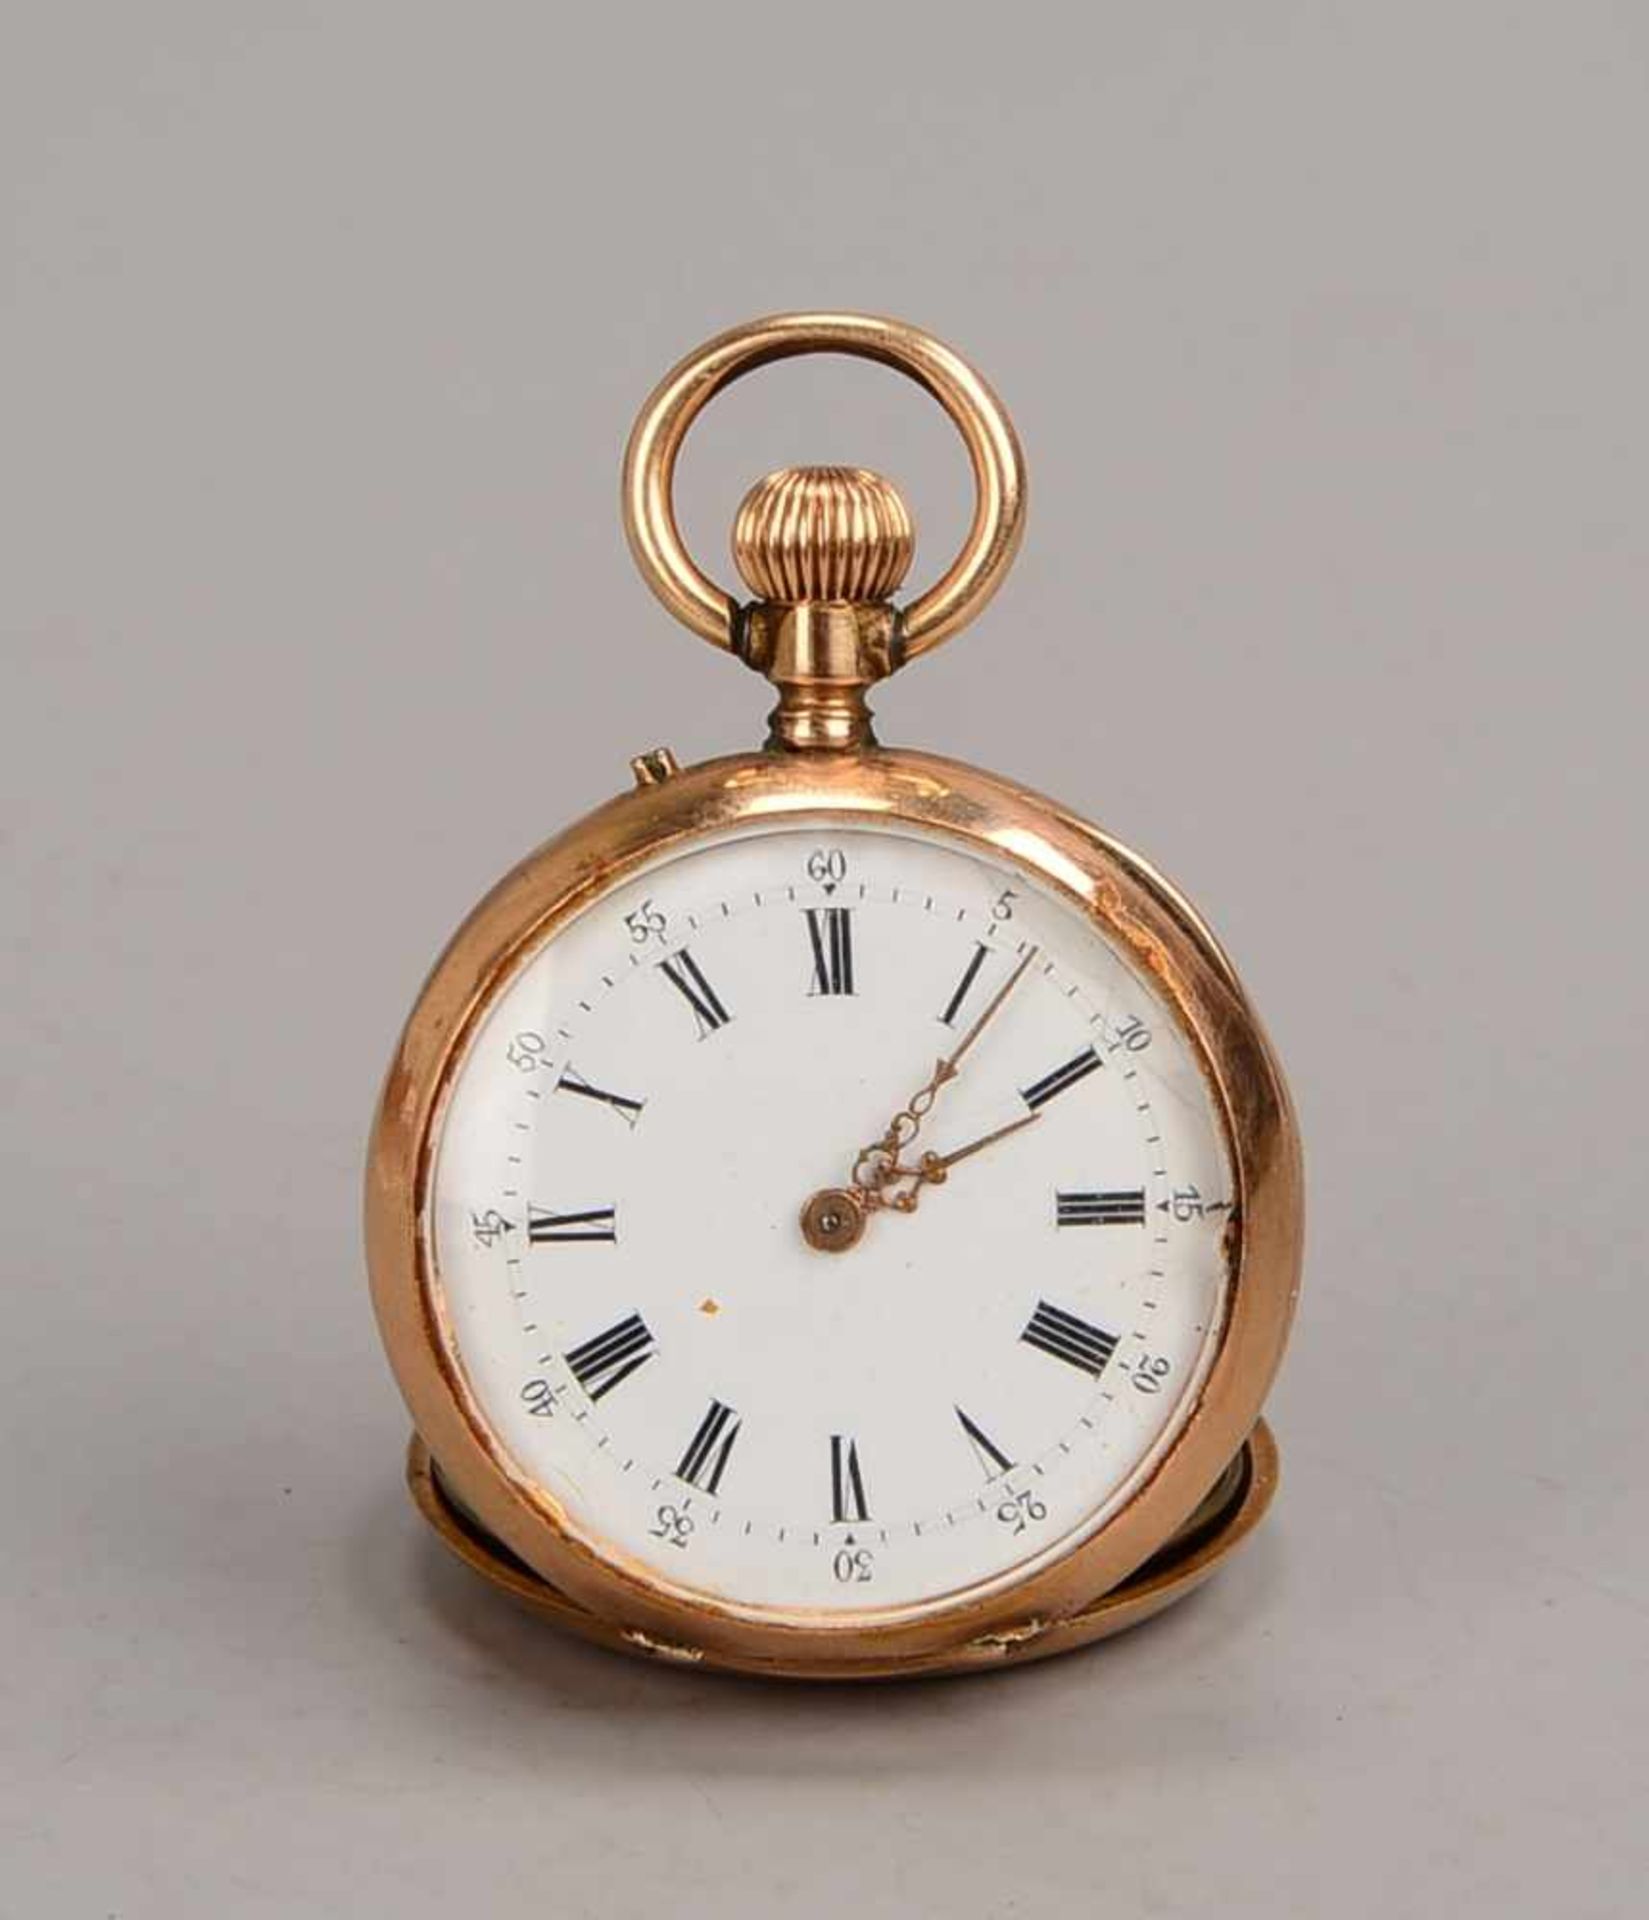 Taschenuhr, Remontoir, 750 Roségold, Außendeckel innen mehrfach punziert, Uhr läuft an;